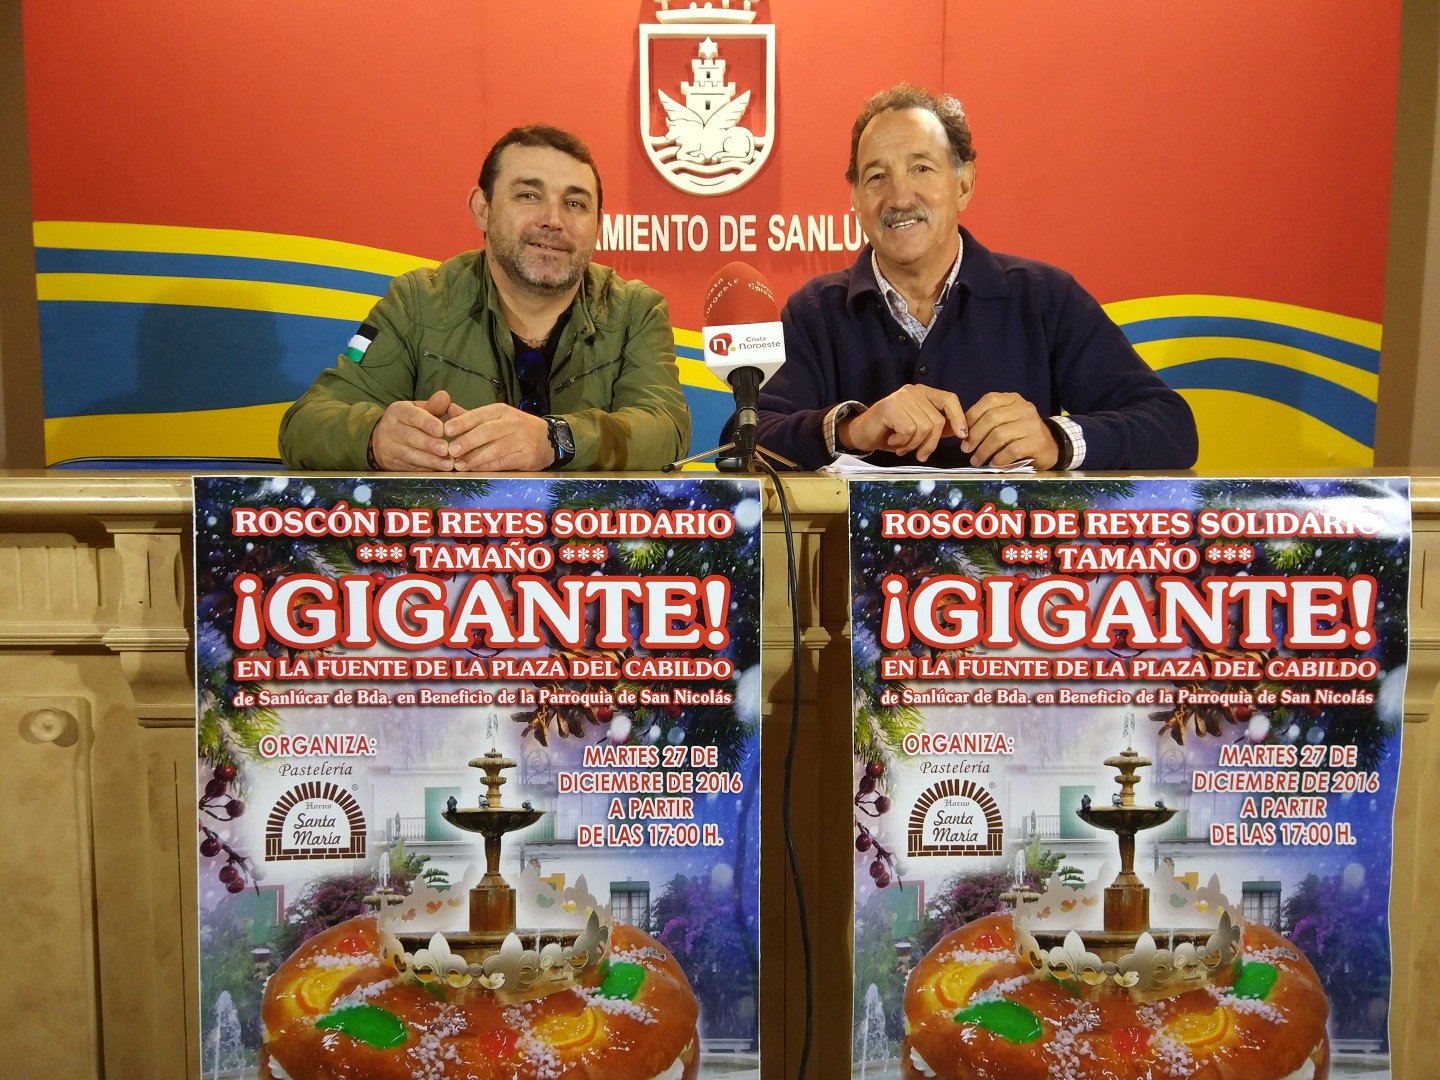 La pastelería Horno Santa María elaborará el roscón de reyes gigante y solidario (foto: Mariqui Romero)